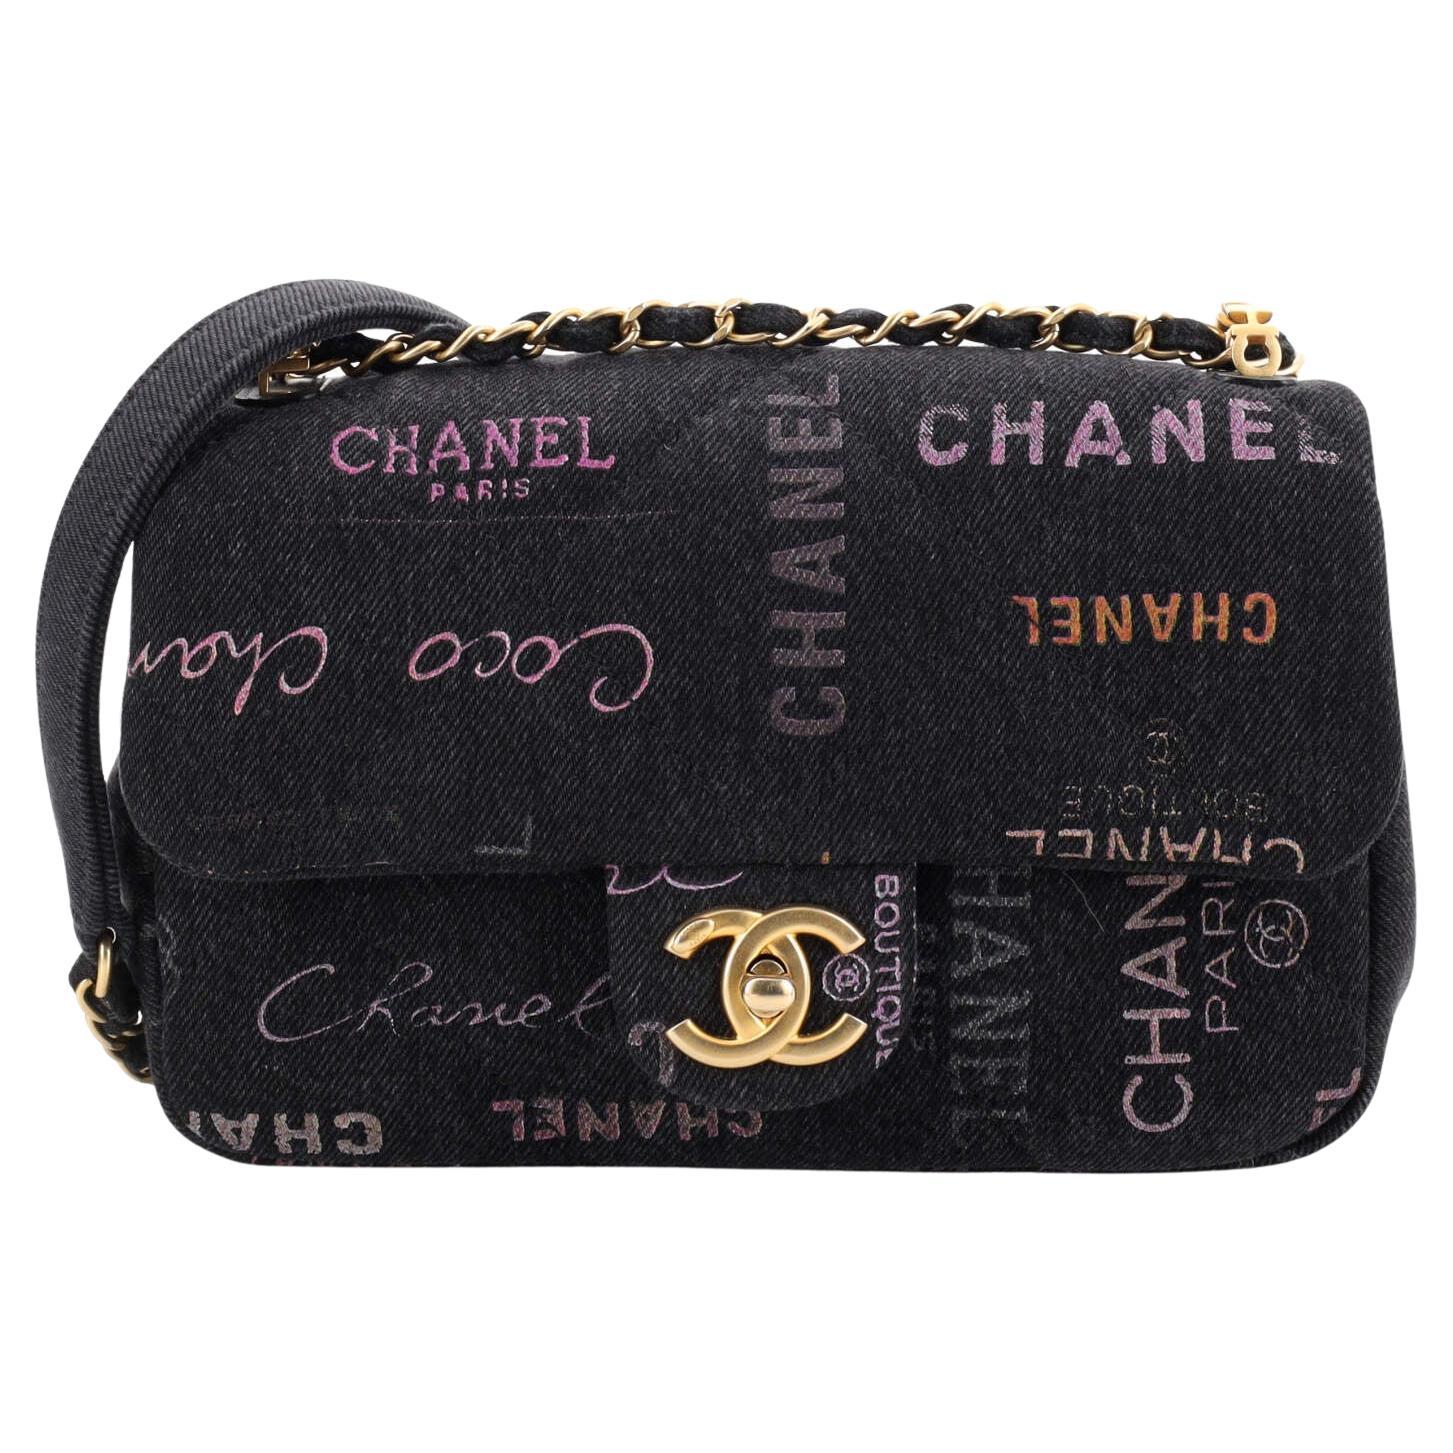 Chanel Denim Mood - 4 For Sale on 1stDibs